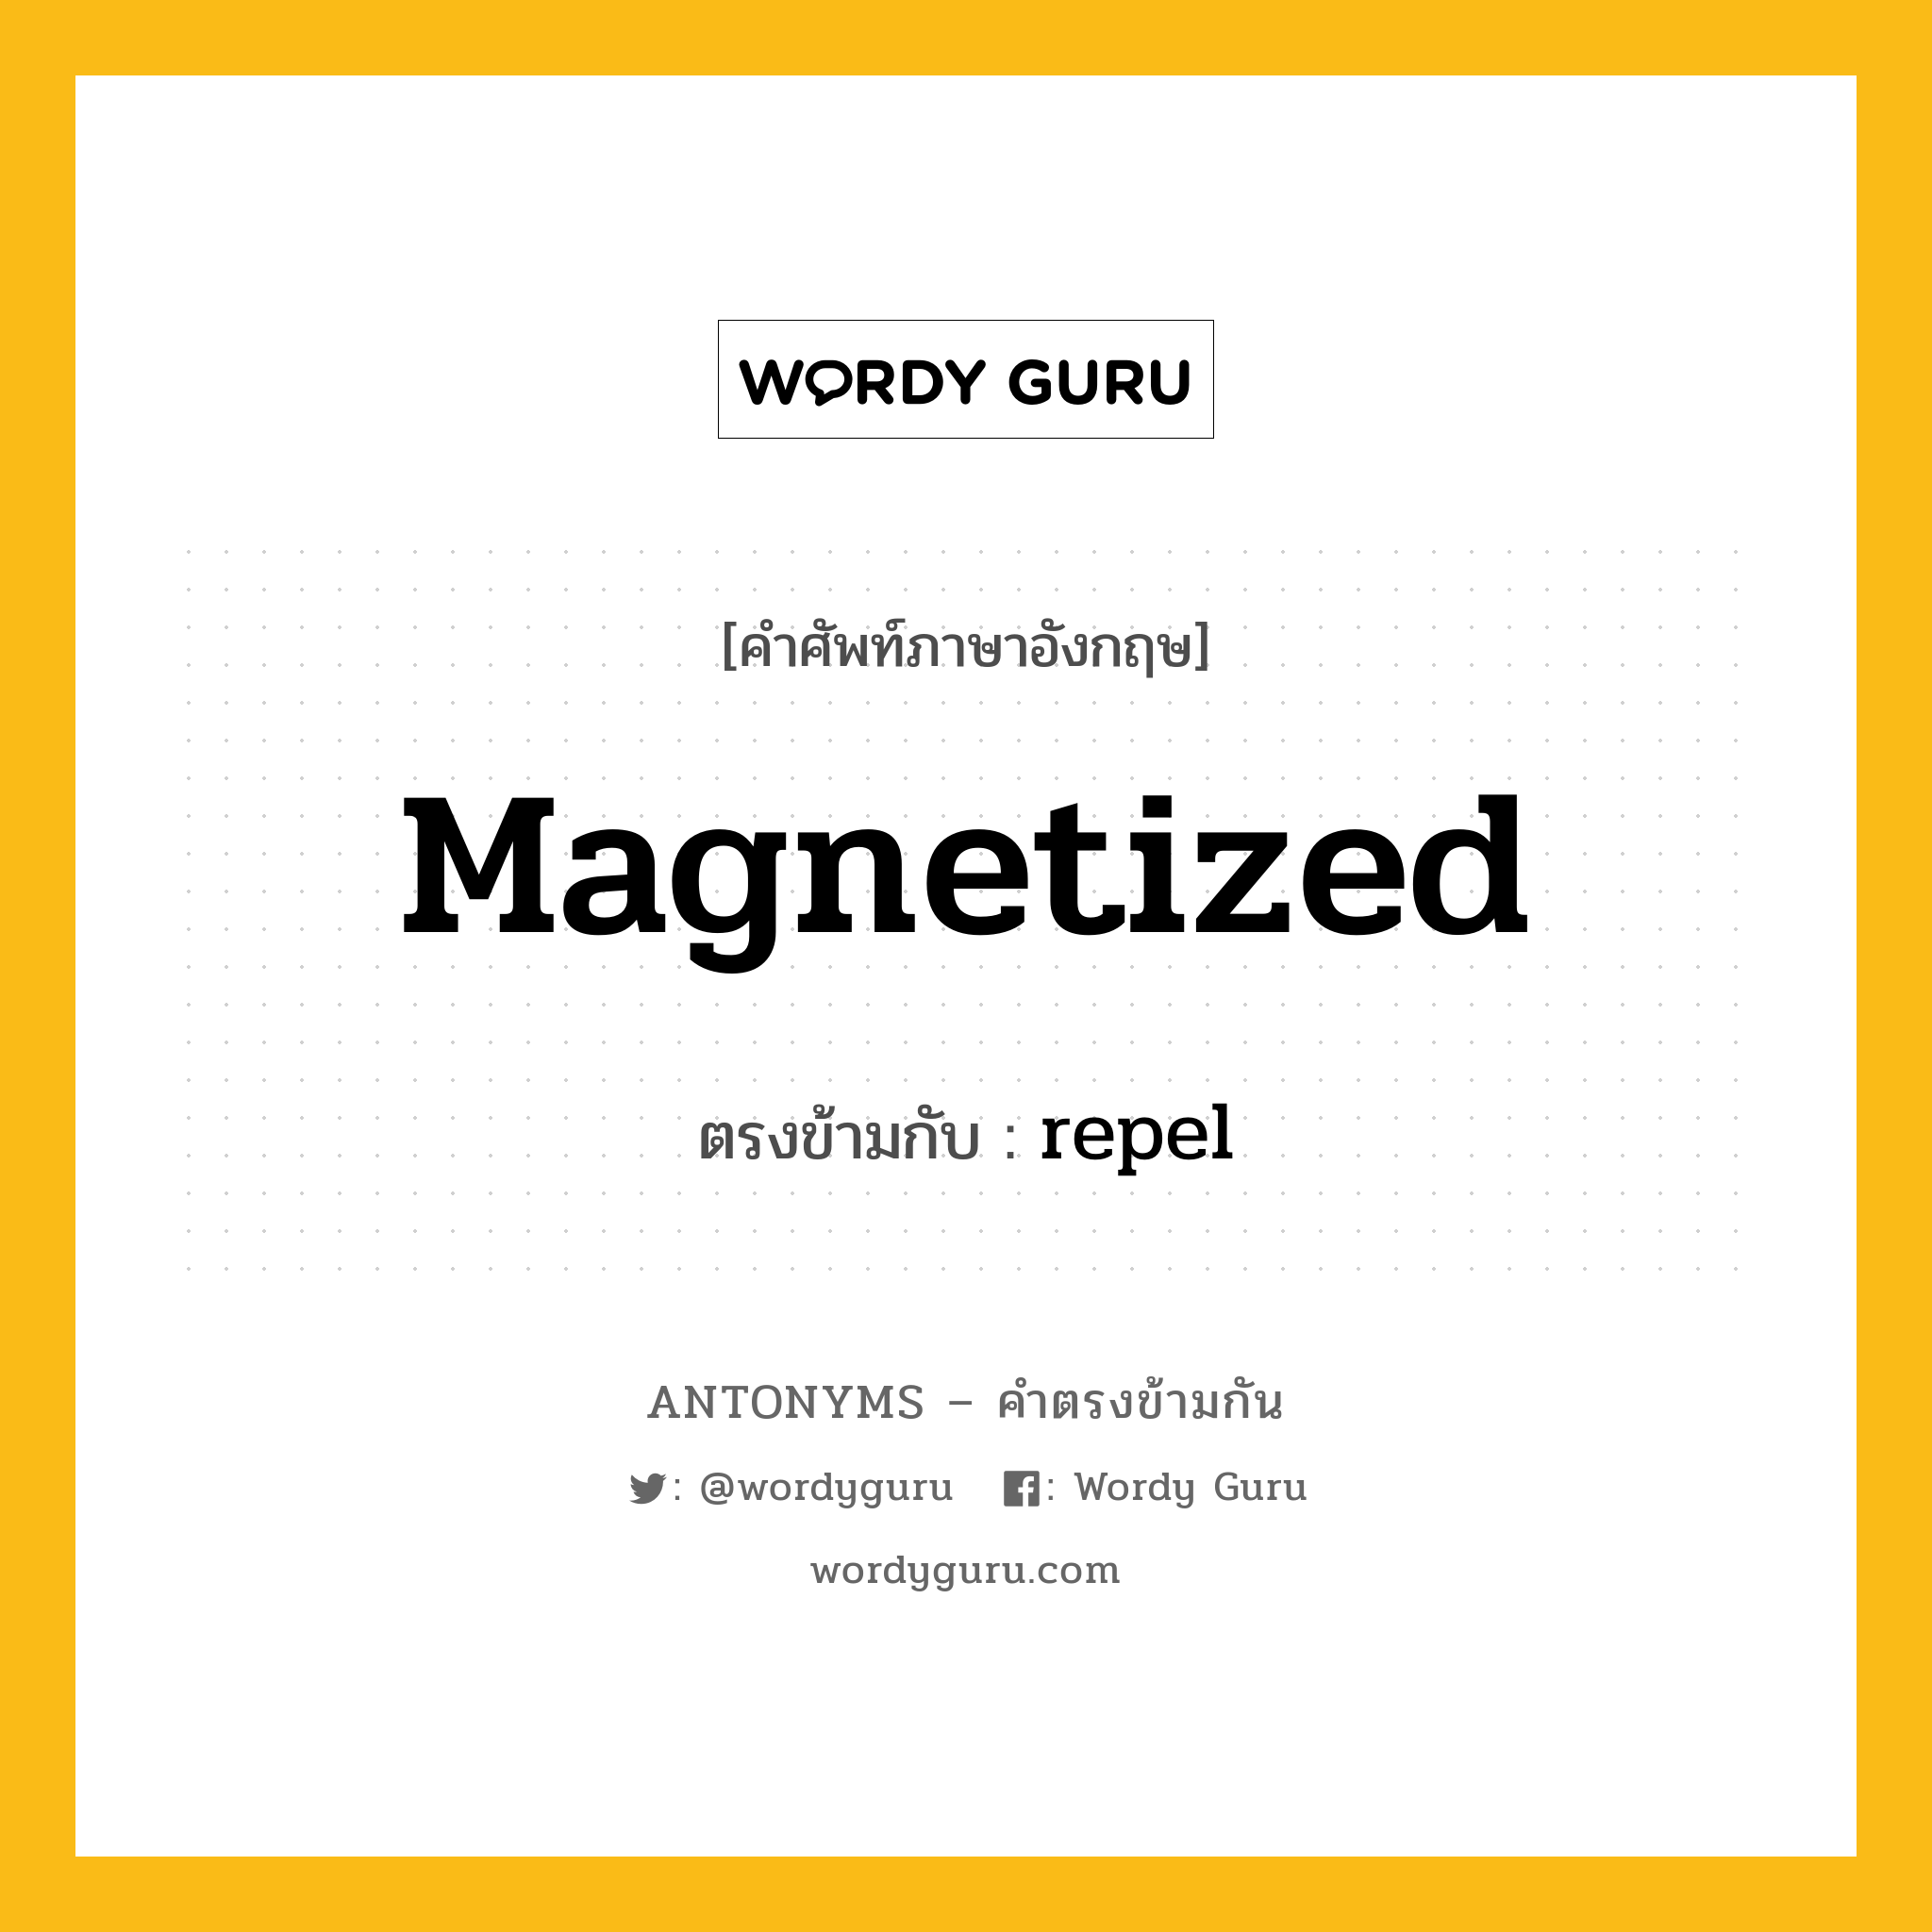 magnetized เป็นคำตรงข้ามกับคำไหนบ้าง?, คำศัพท์ภาษาอังกฤษ magnetized ตรงข้ามกับ repel หมวด repel